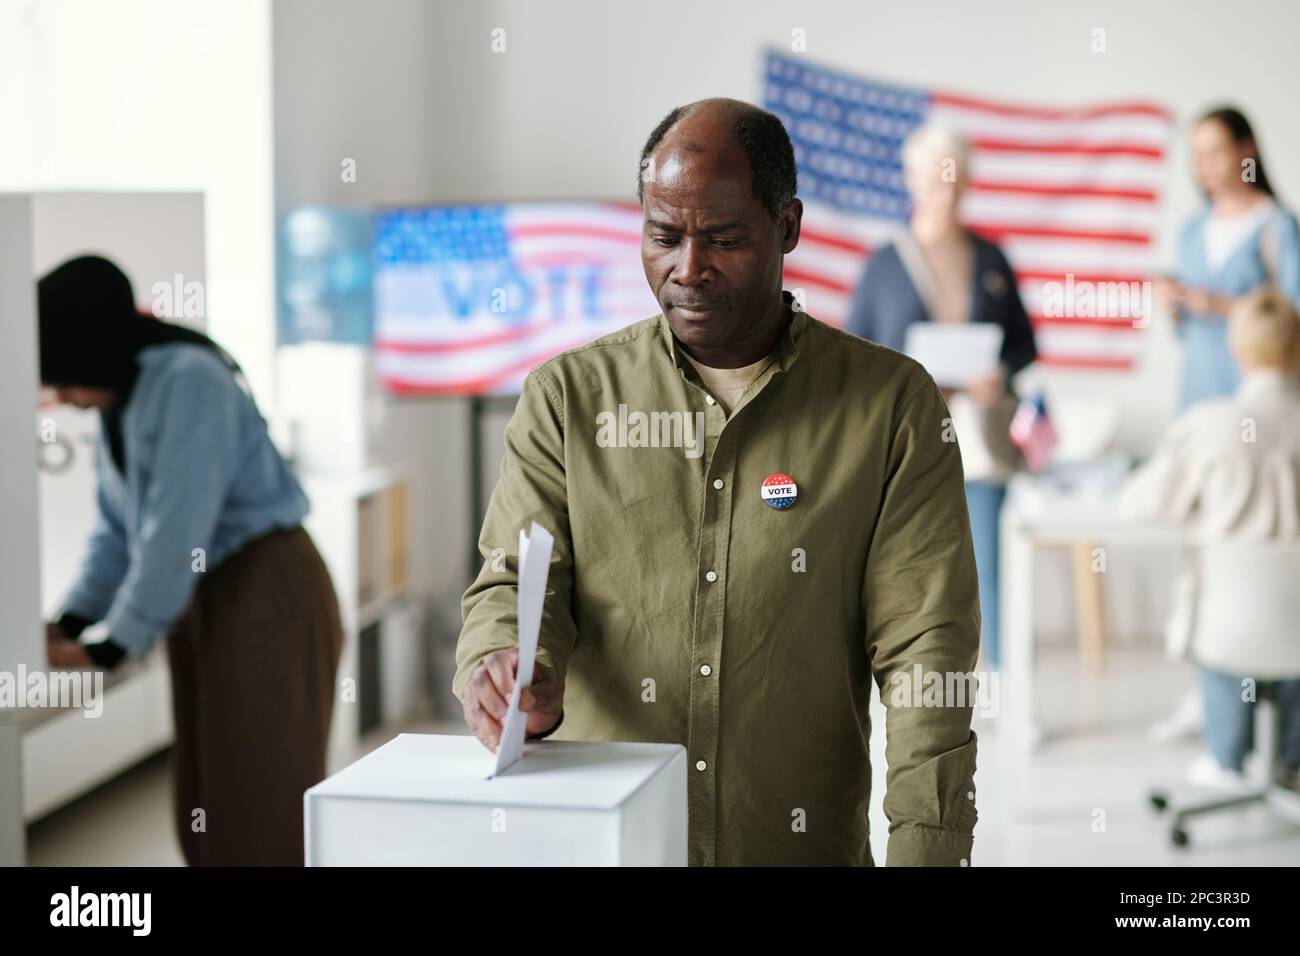 Reifer afroamerikanischer Mann, der an Präsidentschaftswahlen teilnimmt, während er an der Wahlurne steht und ein Dokument mit seiner Wahl dort ablegt Stockfoto